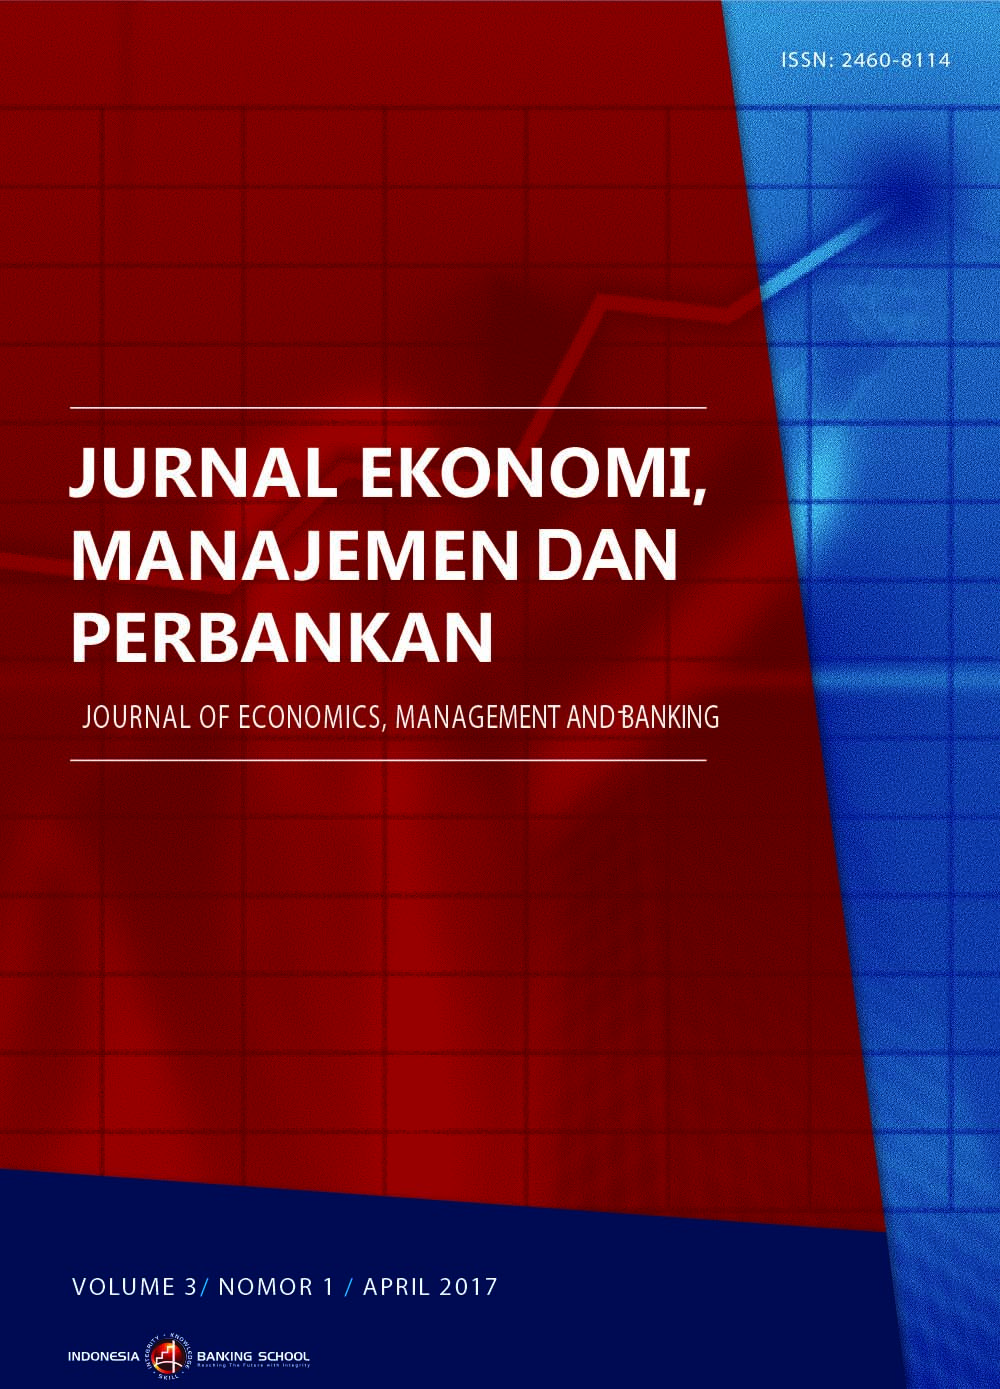 					View Vol. 3 No. 1 (2017): Jurnal Ekonomi, Manajemen dan Perbankan (Journal of Economics, Management, and Banking), Volume 3 No. 1, April 2017
				